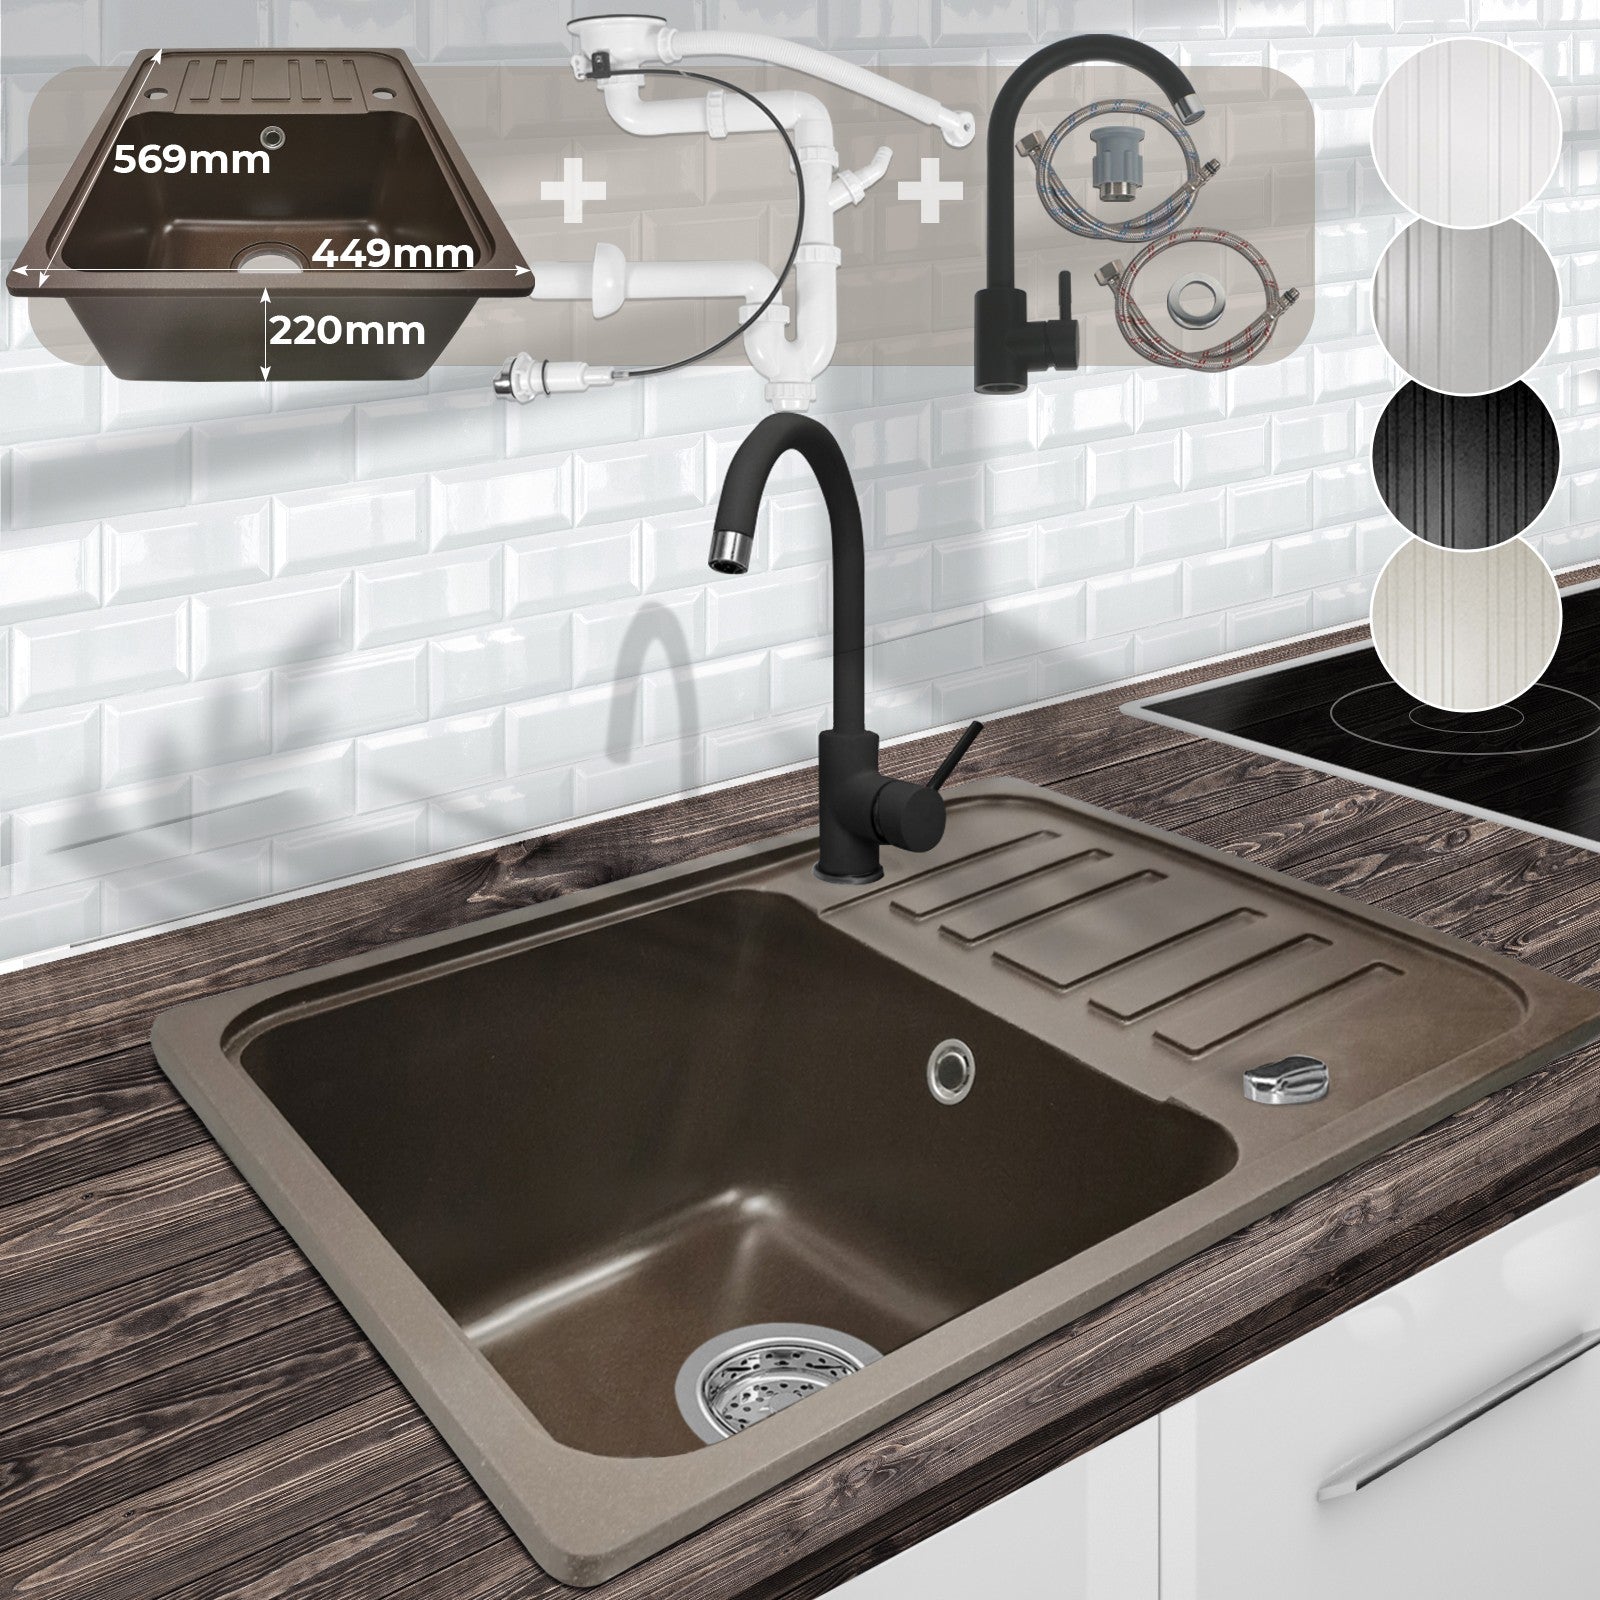 Se Køkkenvask med afløbsbakke, vandhane og vendbart afløbgranit, 569x220x449 mm, brun hos Lammeuld.dk